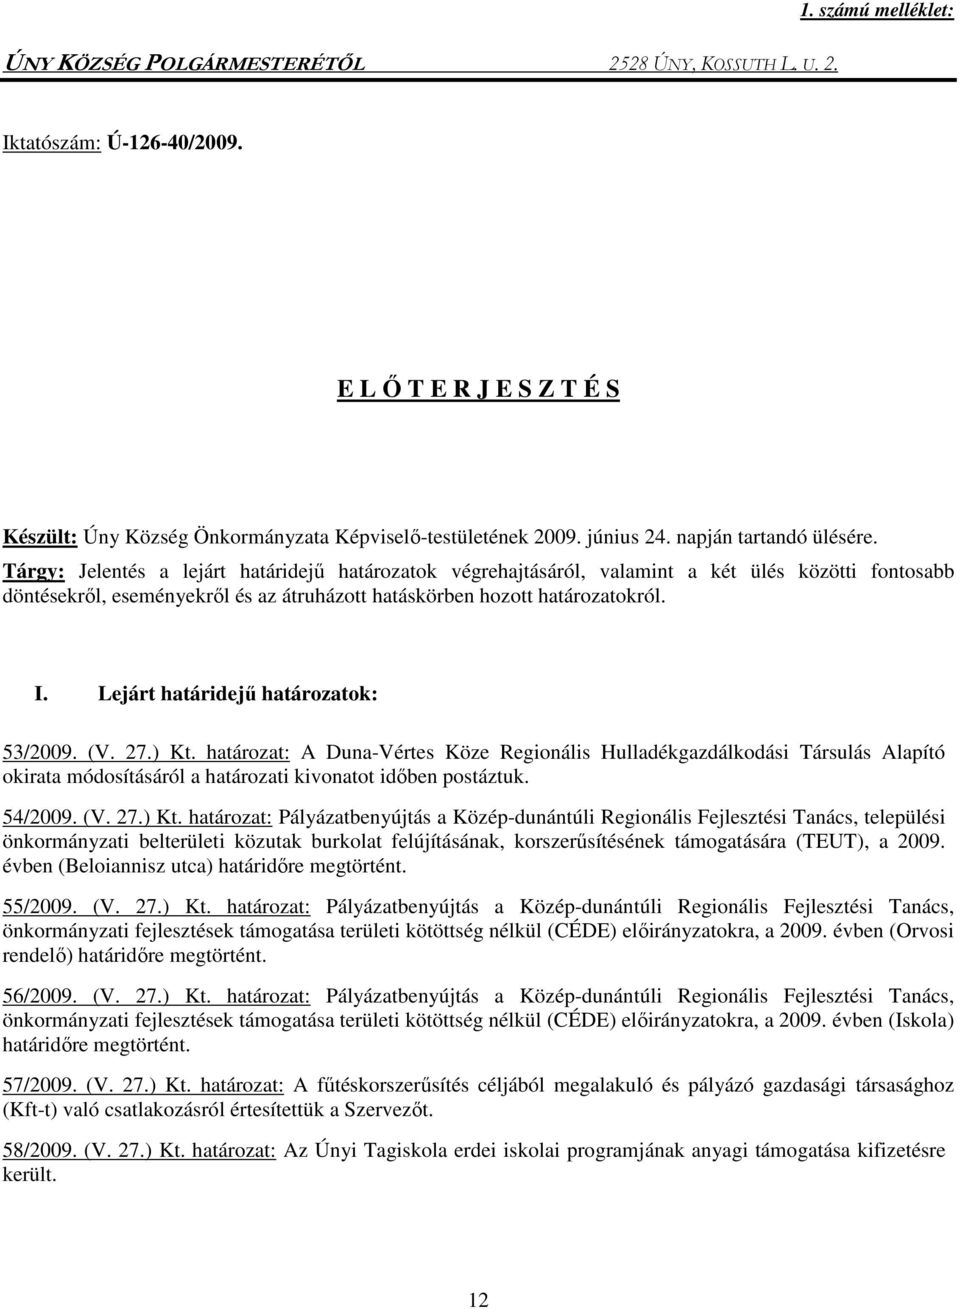 Lejárt határidejő határozatok: 53/2009. (V. 27.) Kt. határozat: A Duna-Vértes Köze Regionális Hulladékgazdálkodási Társulás Alapító okirata módosításáról a határozati kivonatot idıben postáztuk.